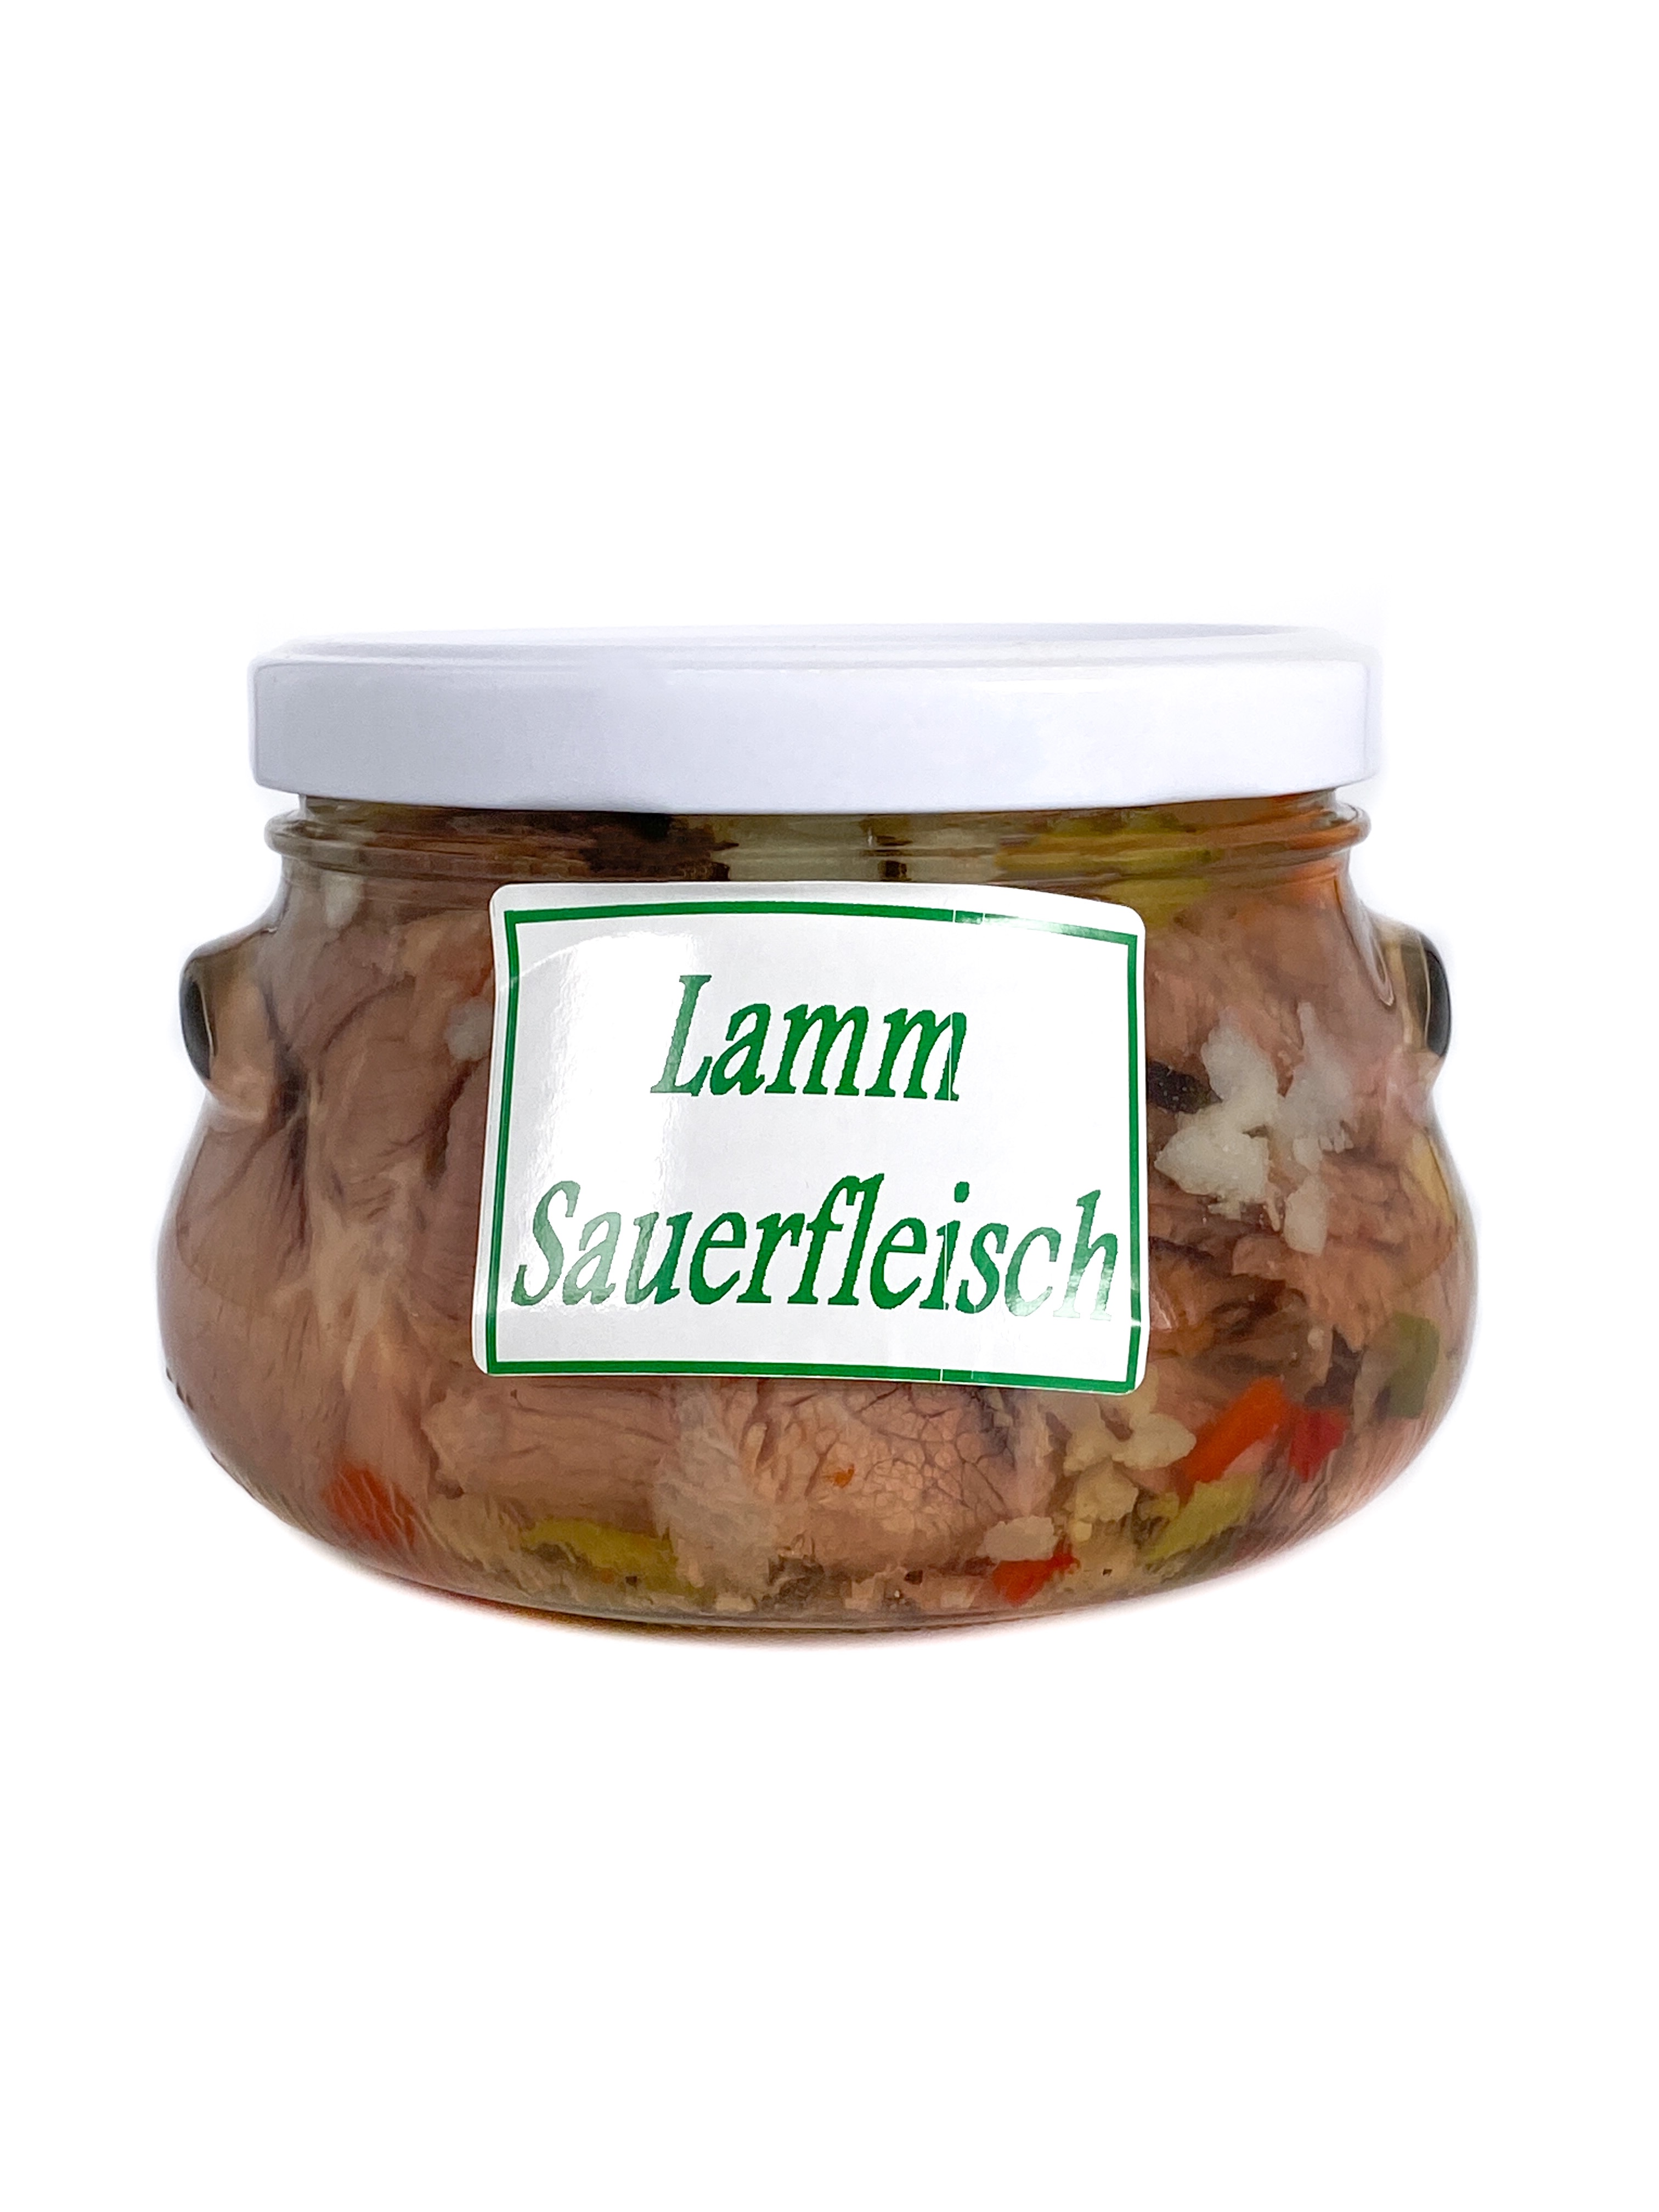 Lamm Sauerfleisch | vom Lamm | Galloway Rind, Lamm &amp; Schwein ...